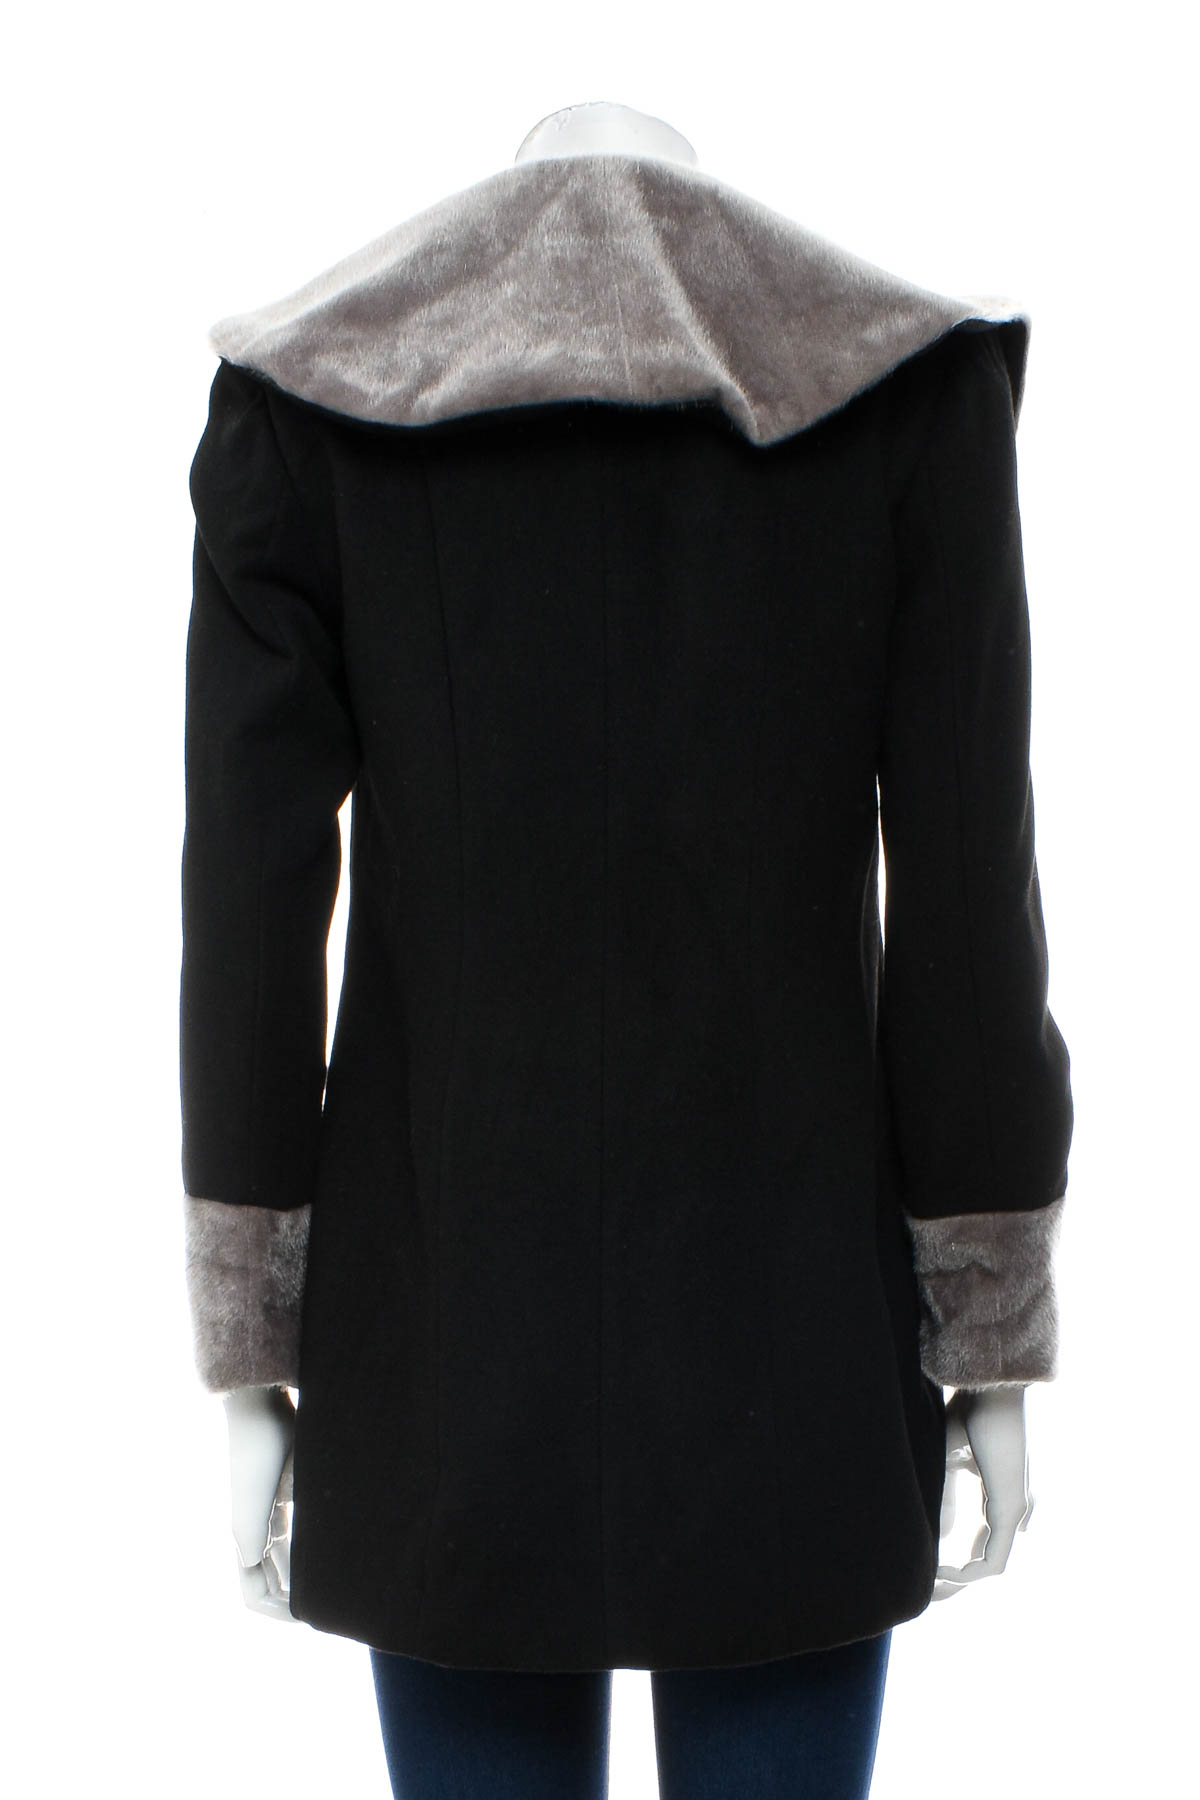 Γυναικείο παλτό - DiVela for Amnesia Fashion - 1